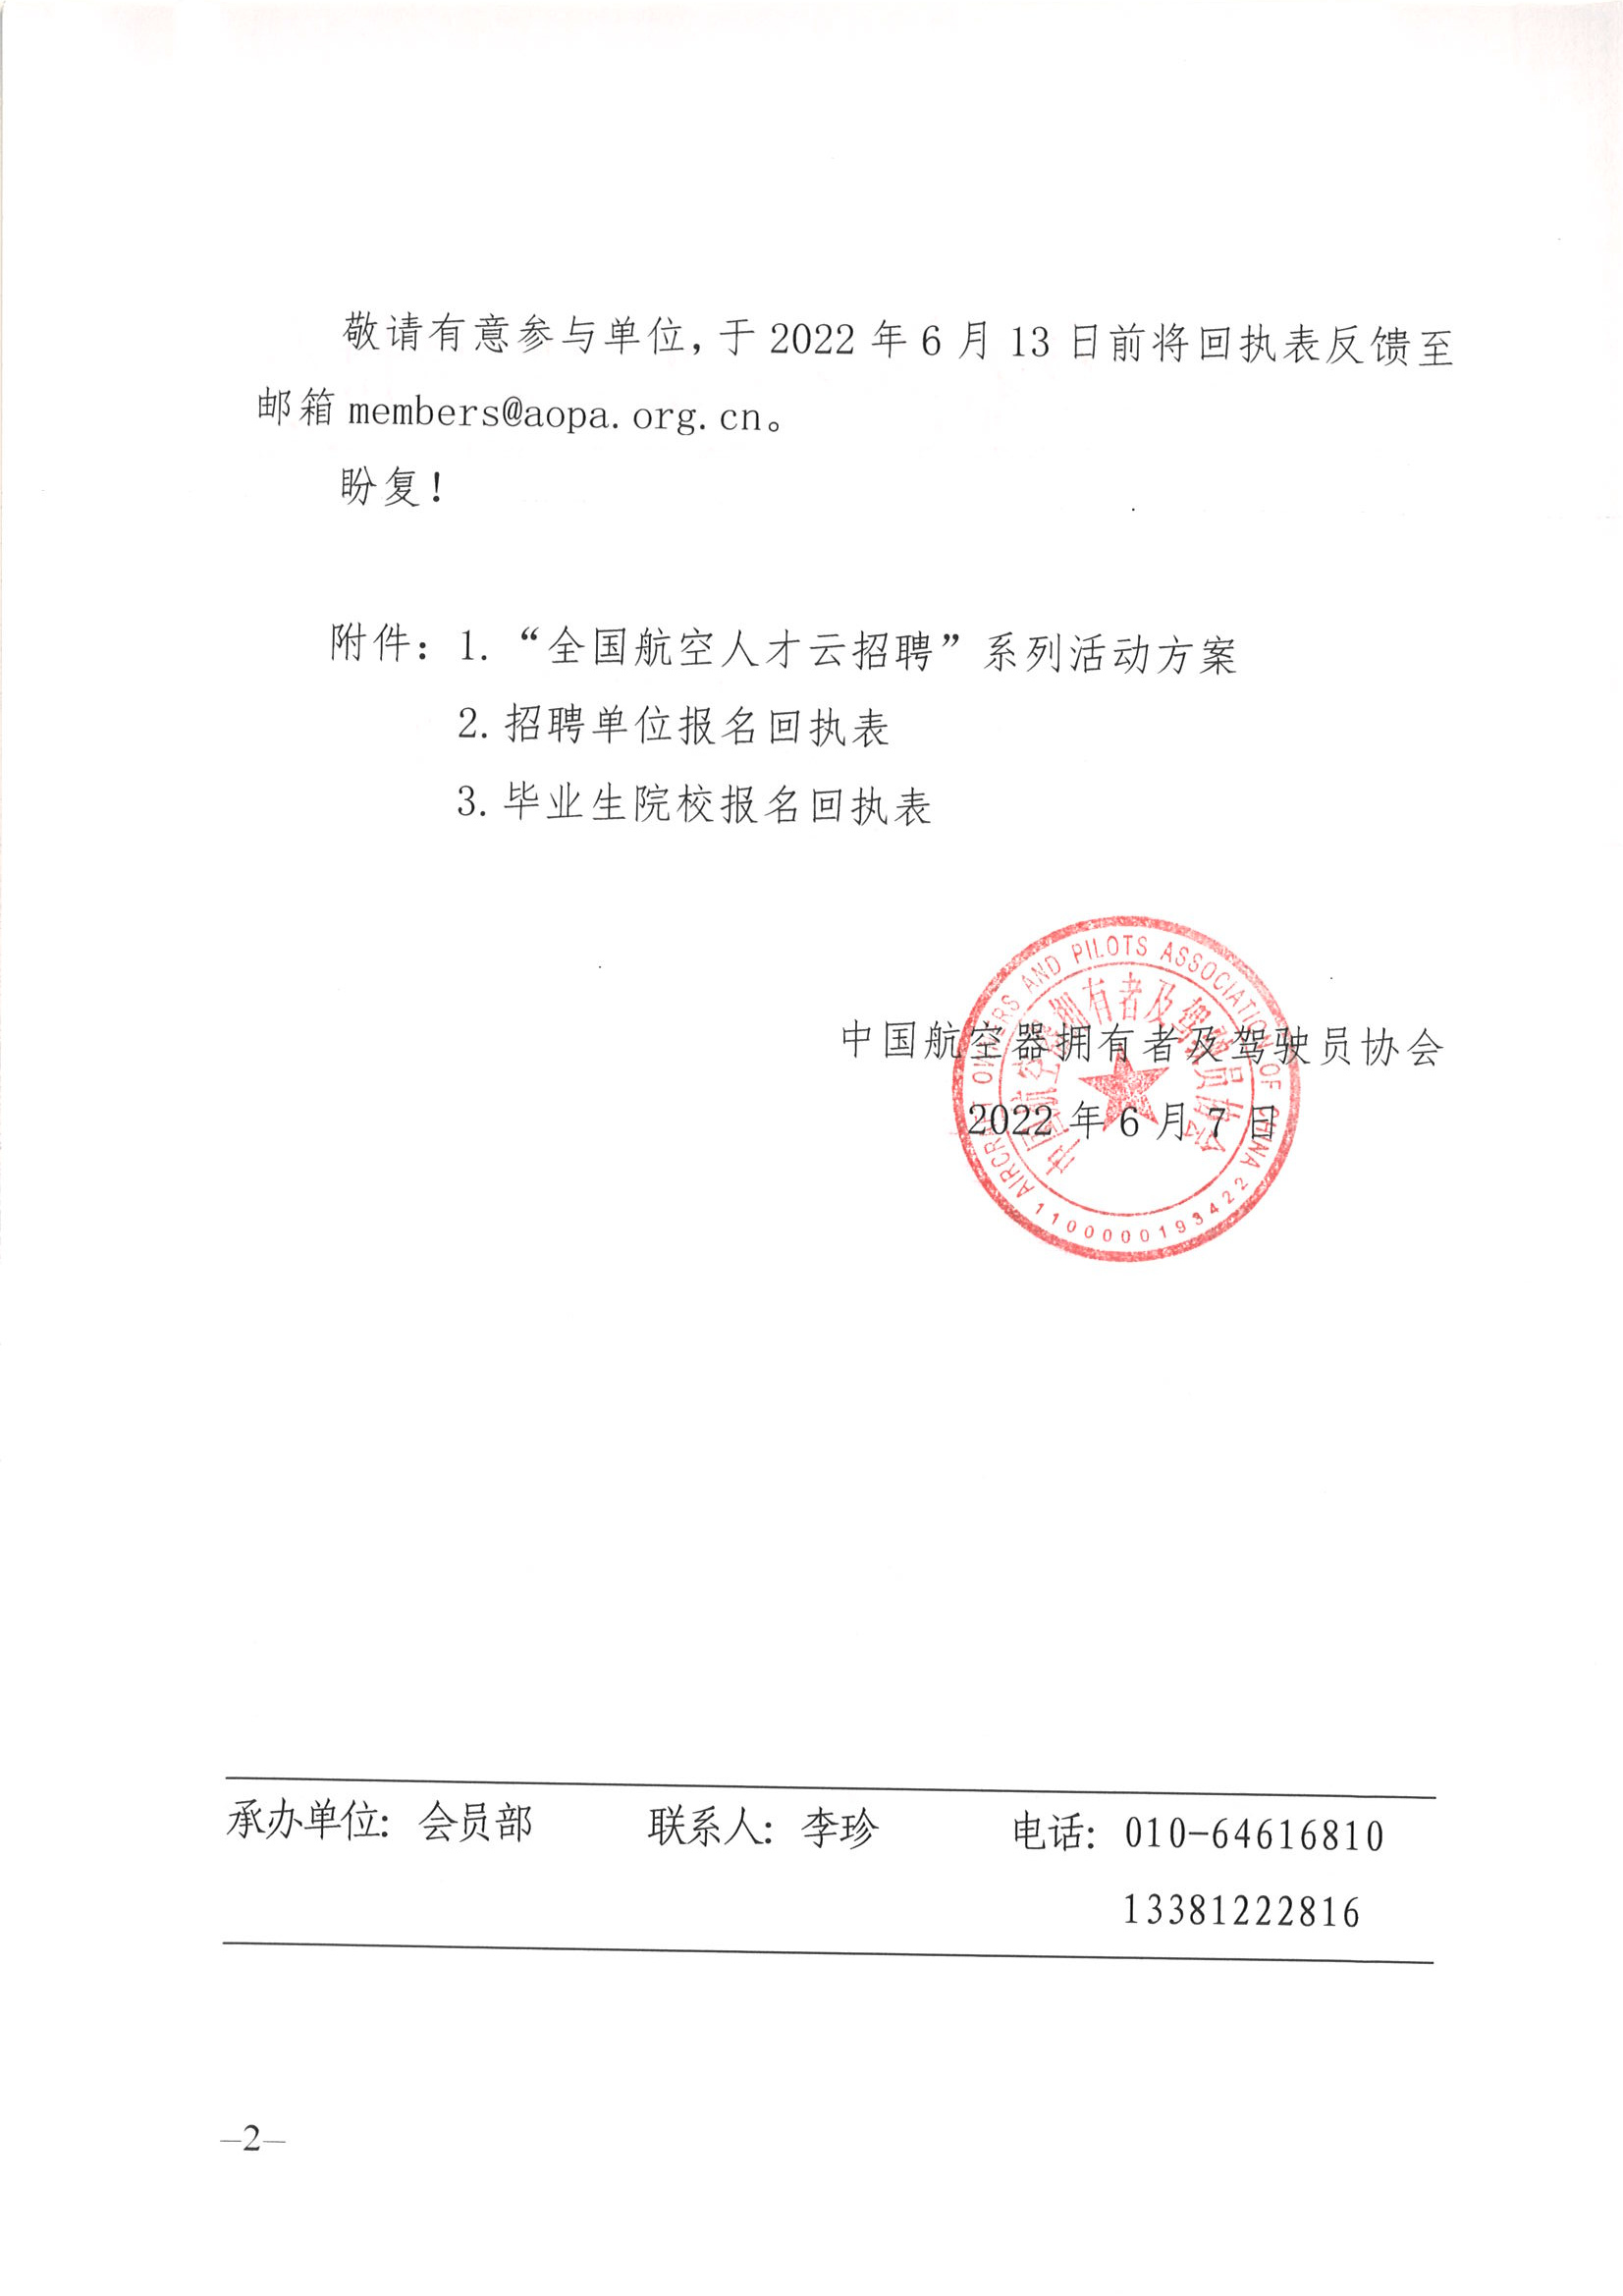 中国AOPA云招聘”系列活动的邀请函0607_页面_2.jpg